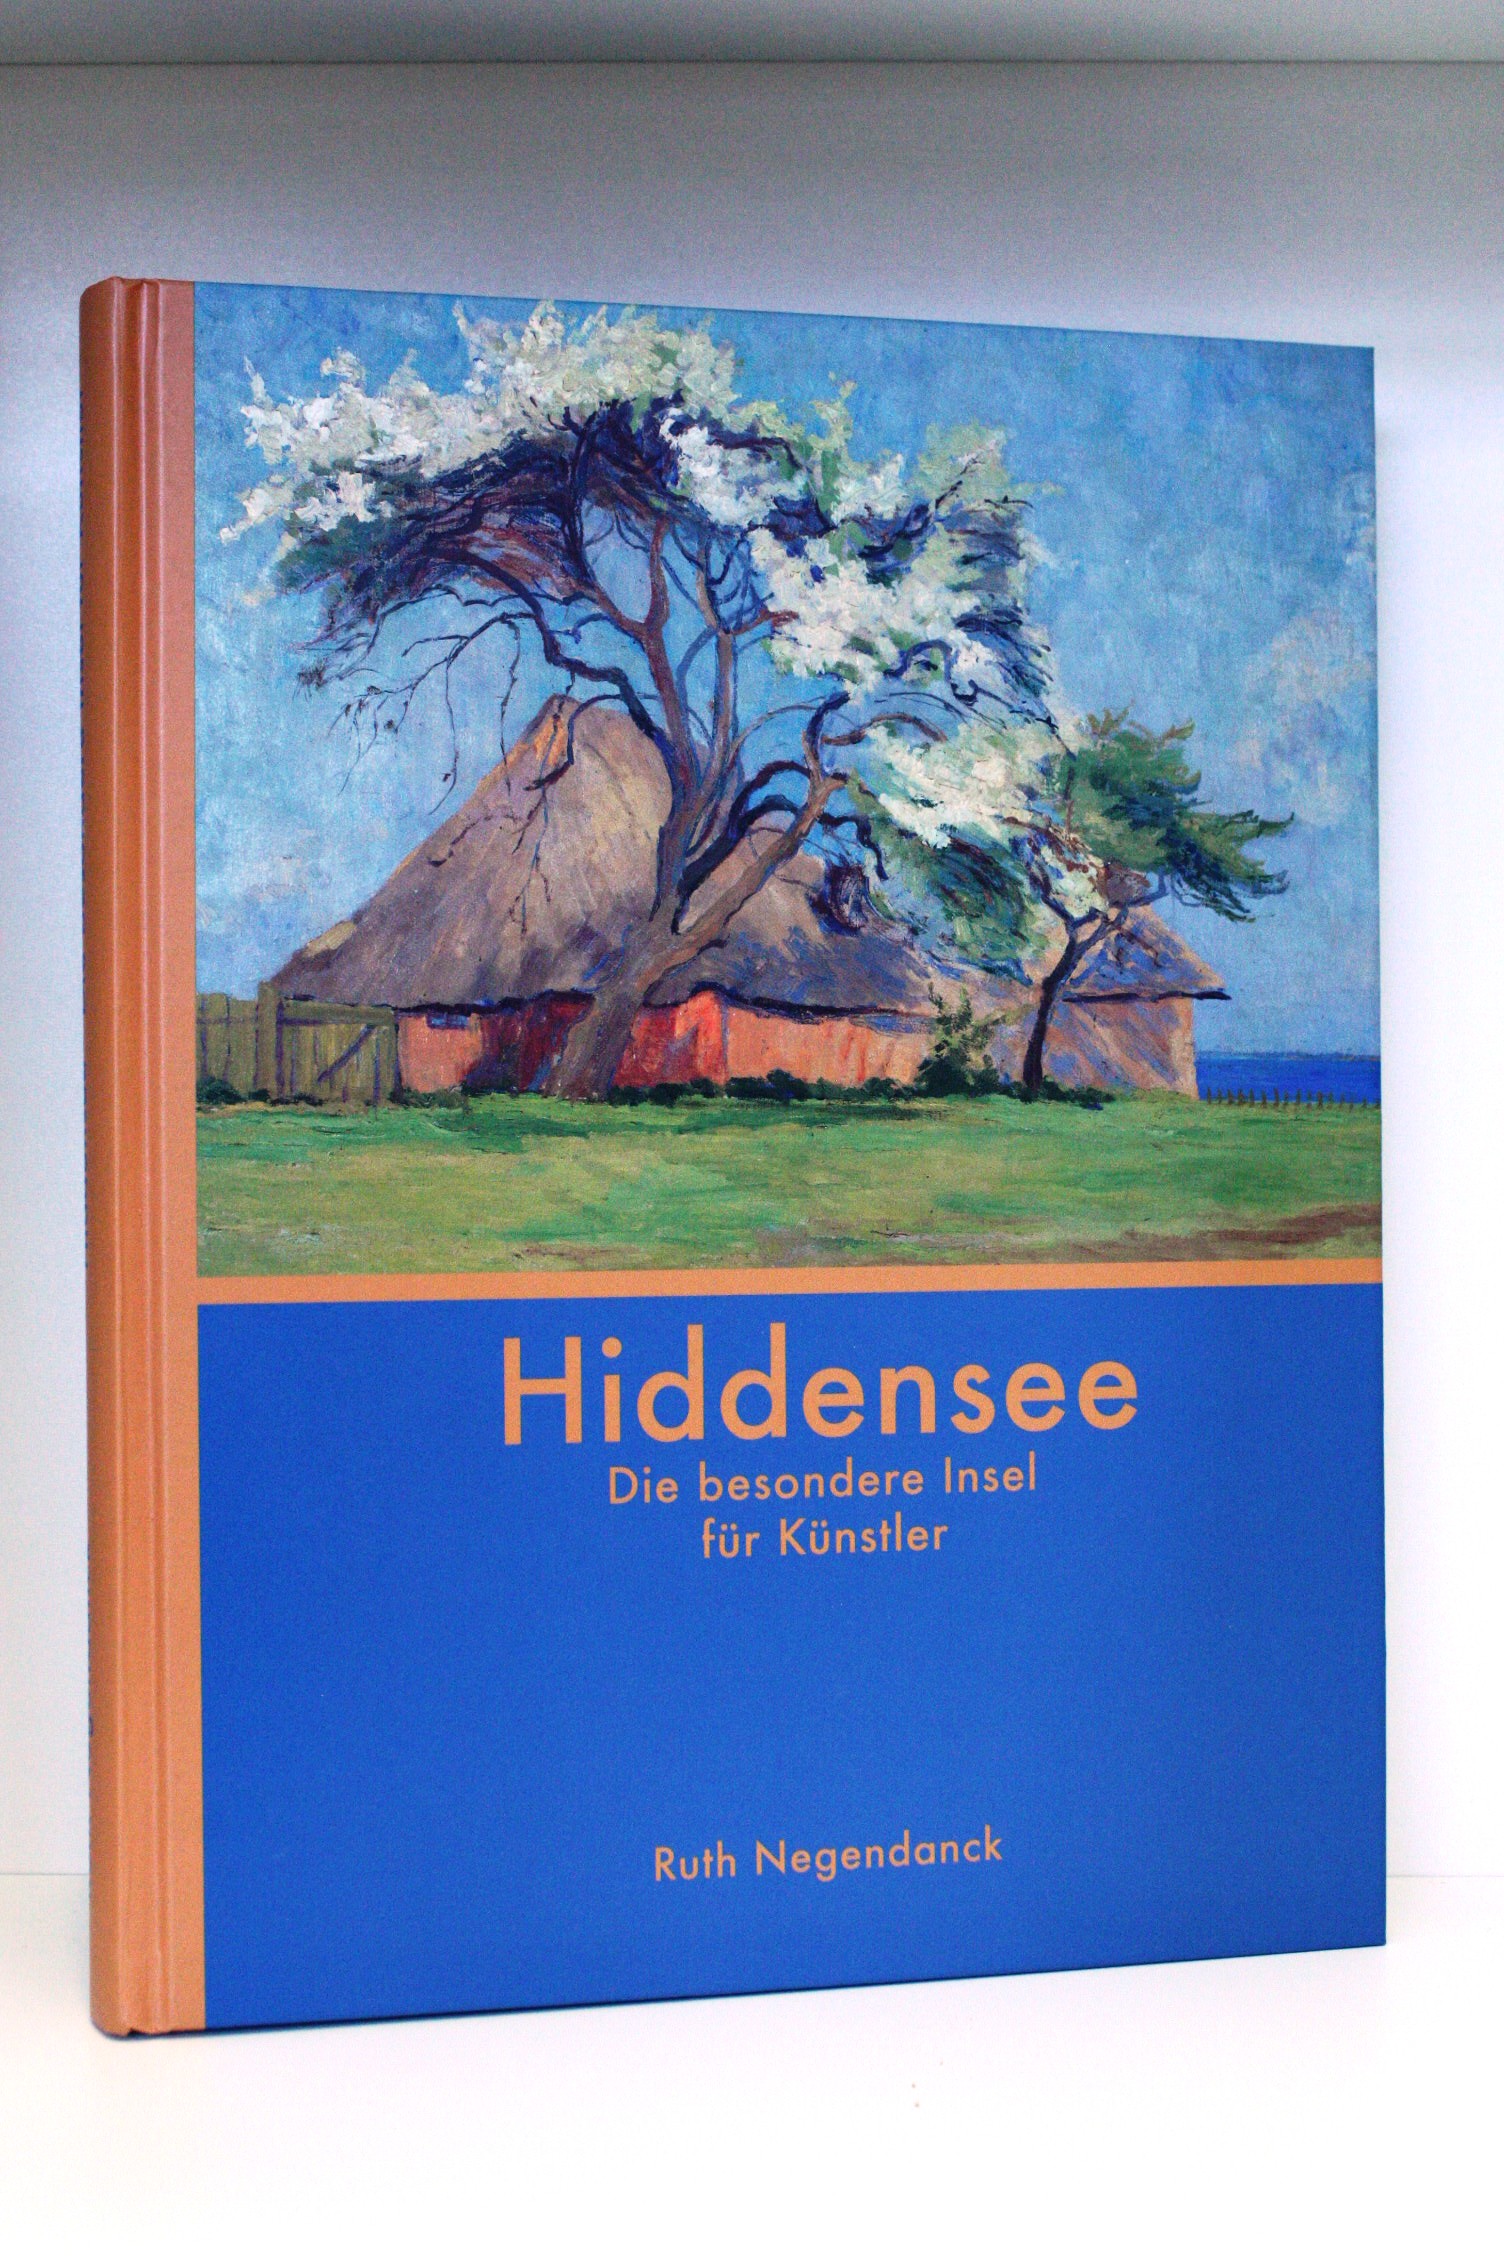 Hiddensee Die besondere Insel für Künstler